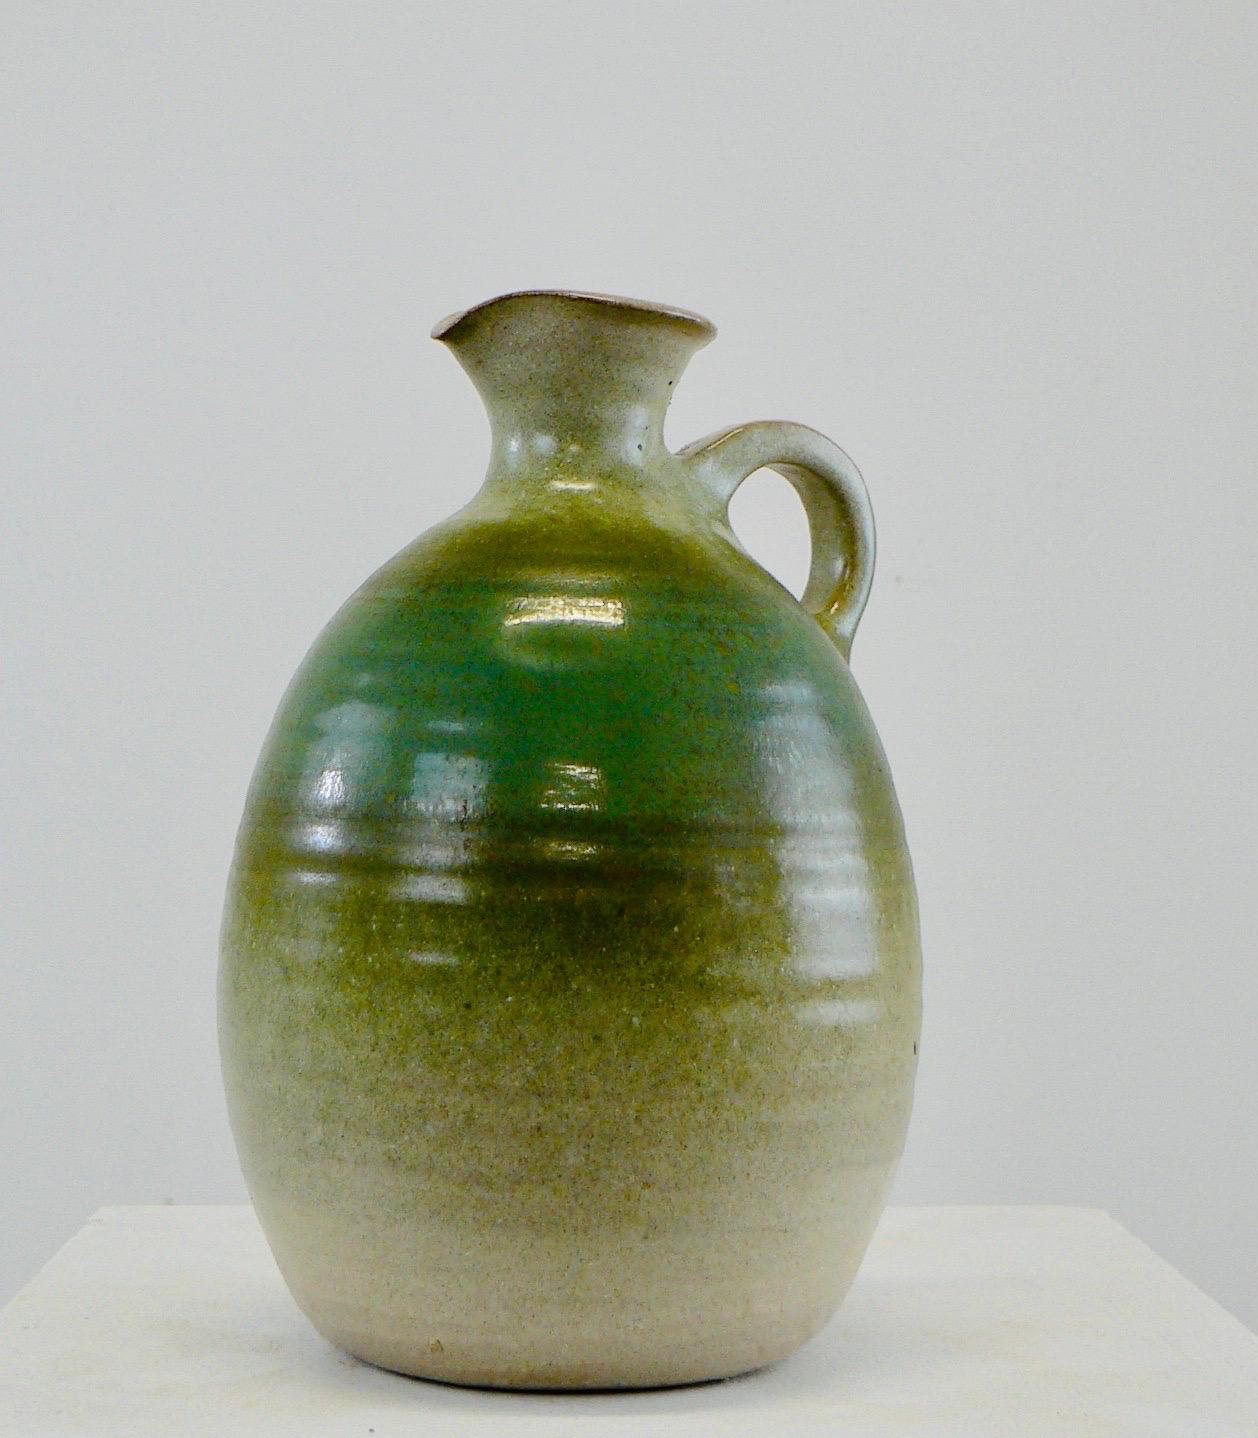 Ein Wasserkrug oder eine einblütige Vase aus französischer Keramik, wahrscheinlich aus den 1950er Jahren. Am Sockel signiert, Unterschrift nicht entzifferbar.